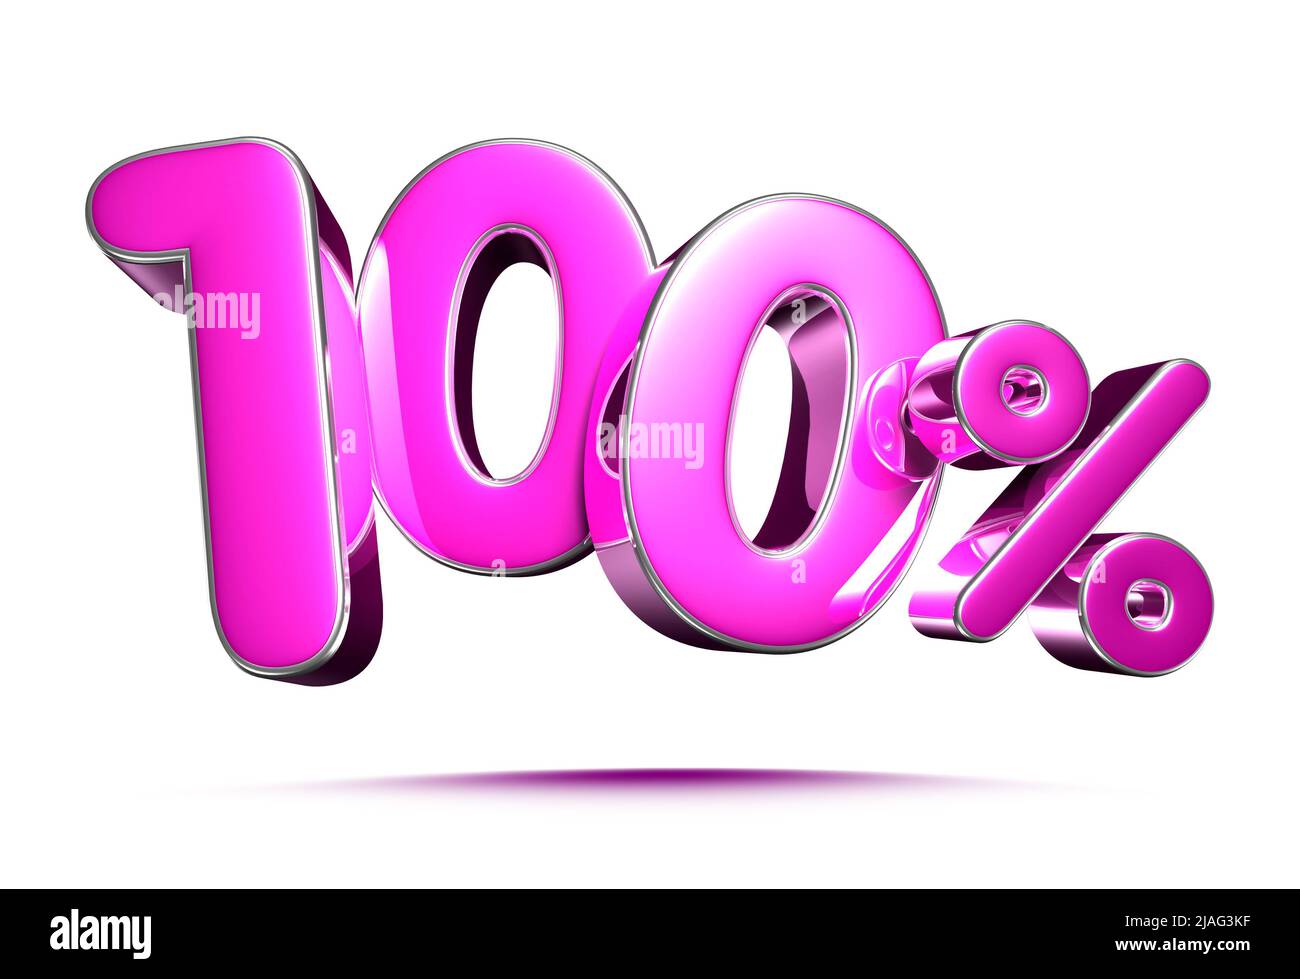 Rosa 100 Prozent 3D Illustration Zeichen auf weißem Hintergrund, Sonderangebot 100% Rabatt Tag, Verkauf bis zu 100 Prozent Rabatt, Anteil 100 Prozent, 100% Rabatt stor Stockfoto